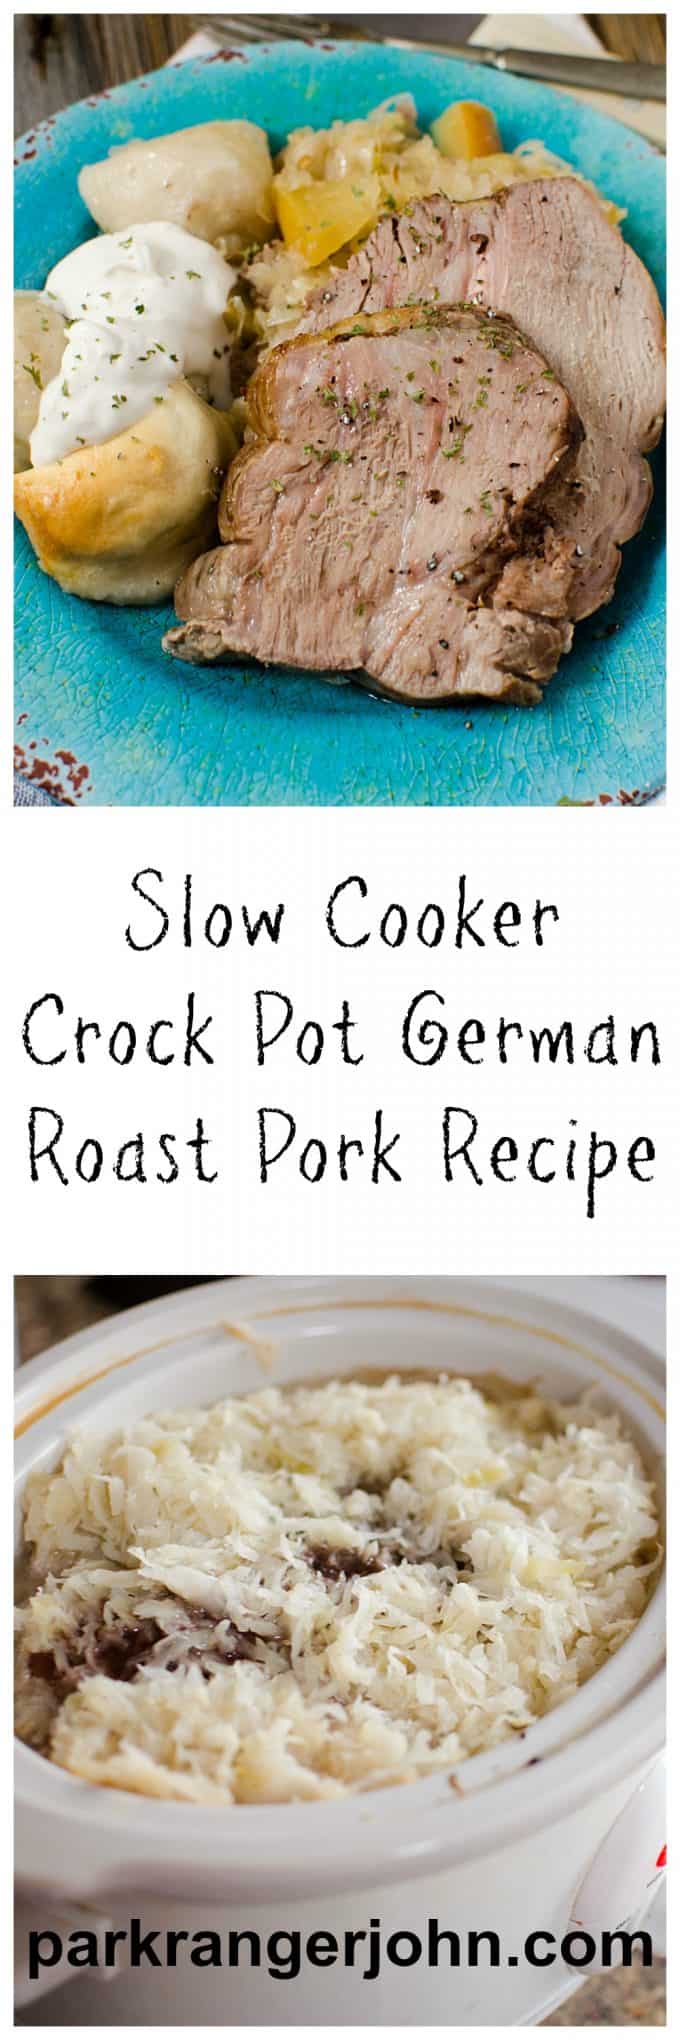 Slow Cooker Crock Pot German Pork Roast & Sauerkraut - Park Ranger John